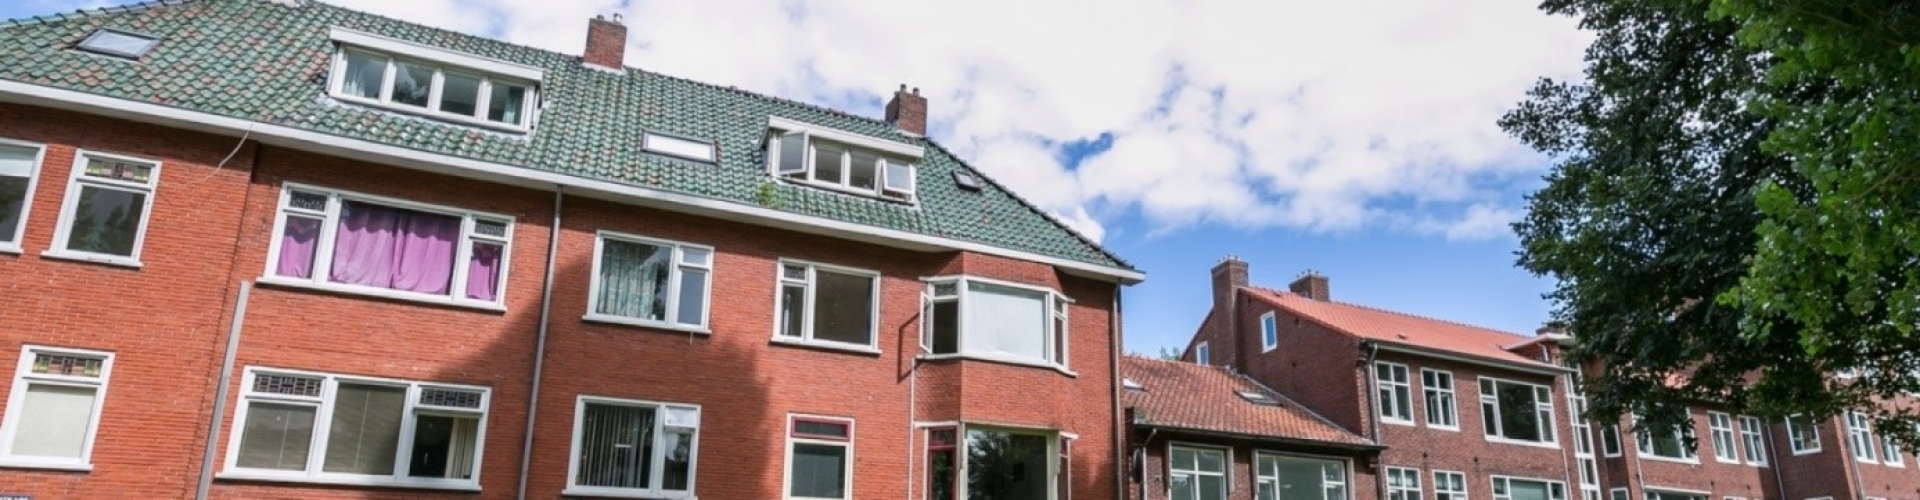 Gering vertrekken Plunderen Studentenhuis verkopen Enschede? Studentenwoning te koop zetten